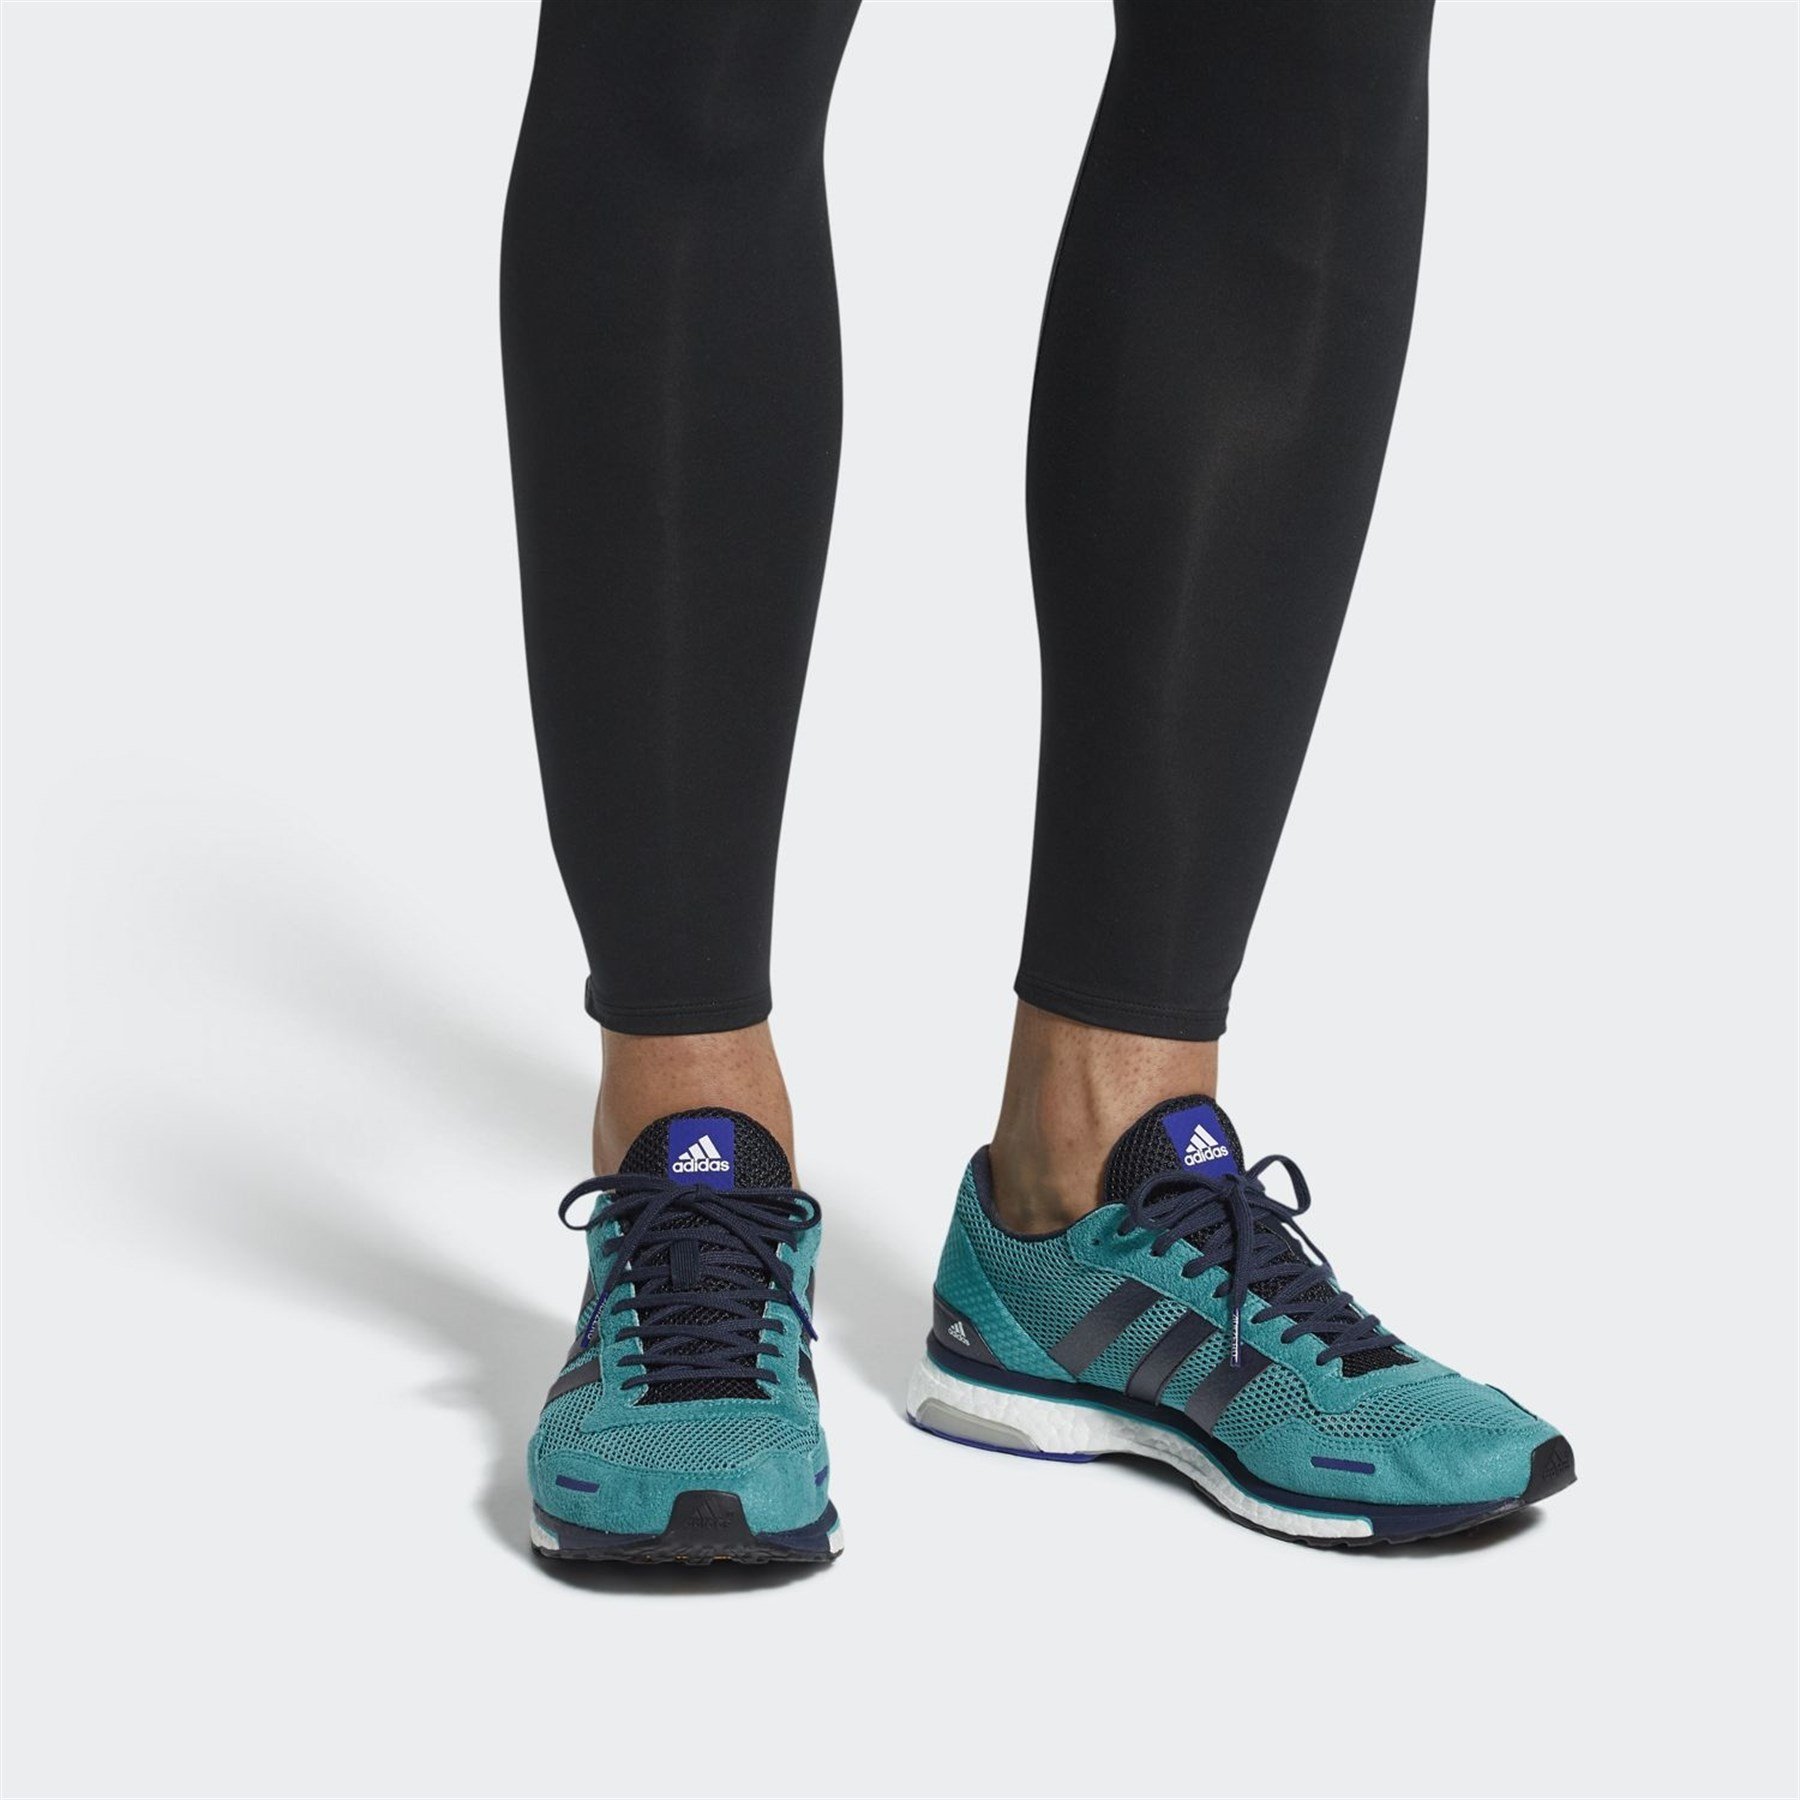 Adidas Erkek Koşu - Yürüyüş Ayakkabısı Aq0190 Adizero Adios 3 M